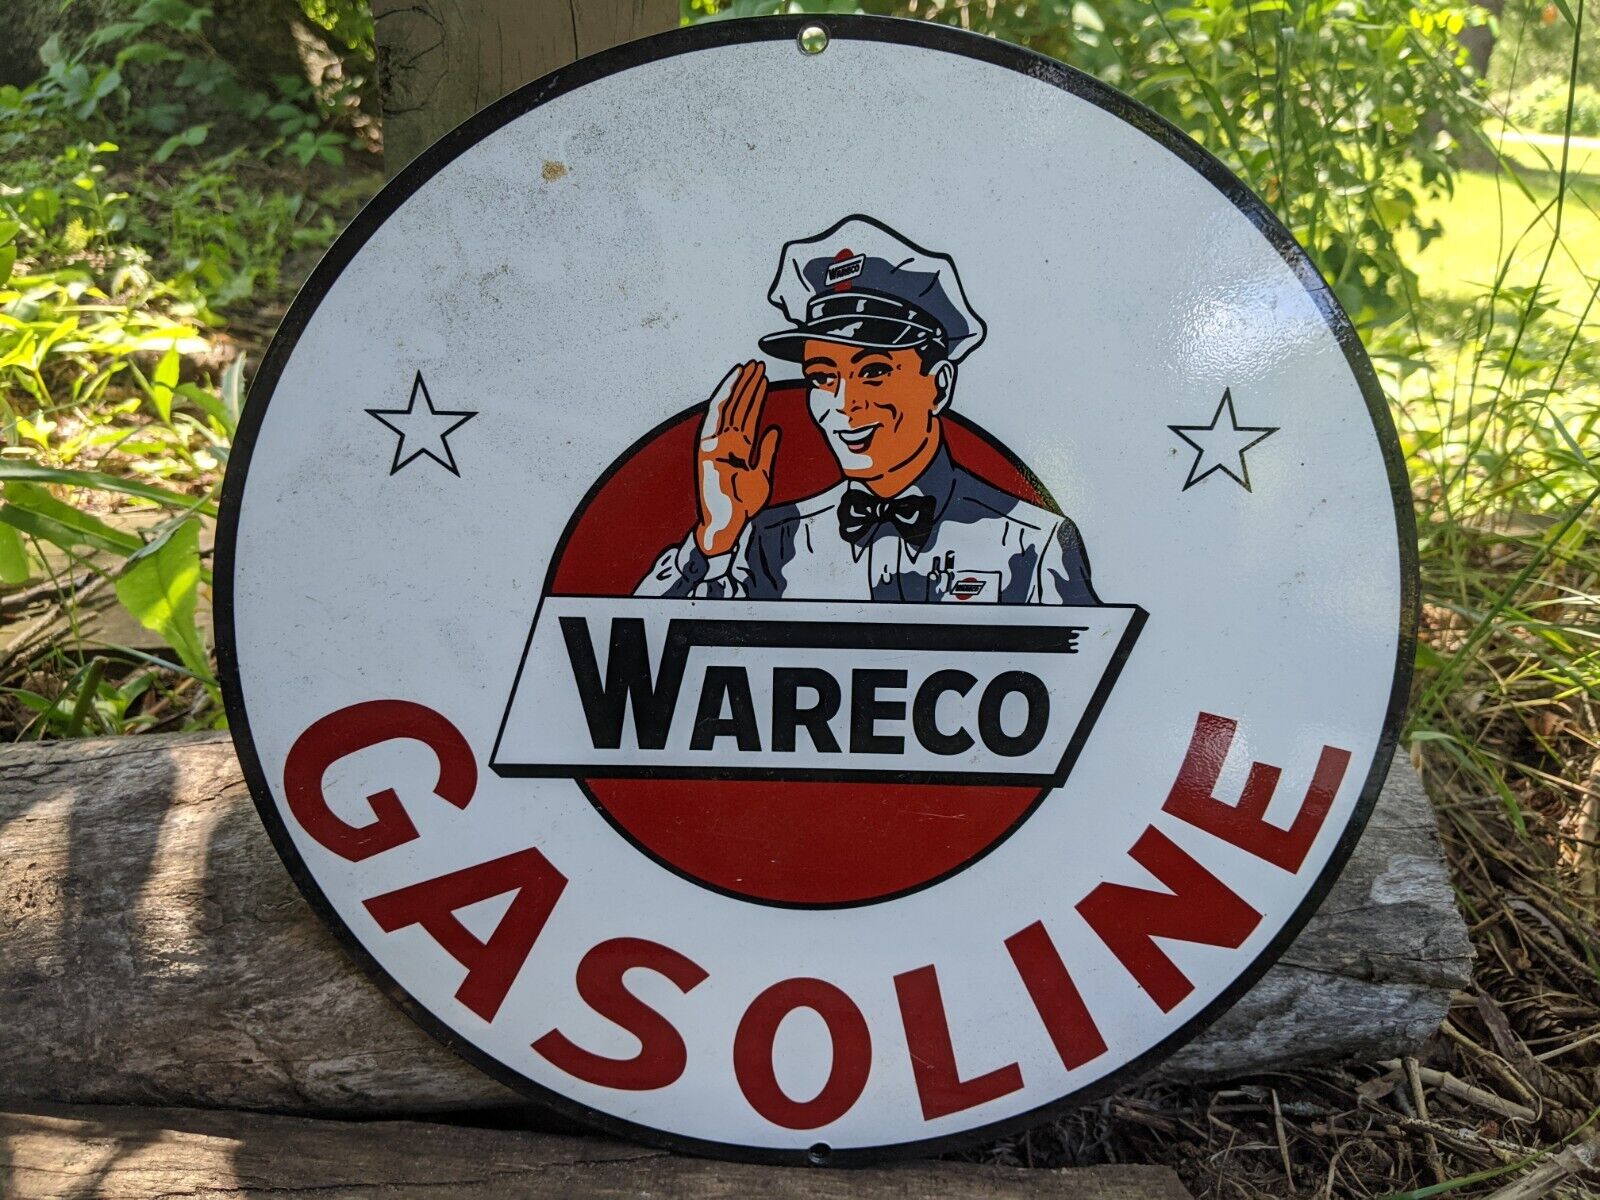 VINTAGE WARECO GASOLINE PORCELAIN GAS STATION PUMP MOTOR OIL SIGN 12